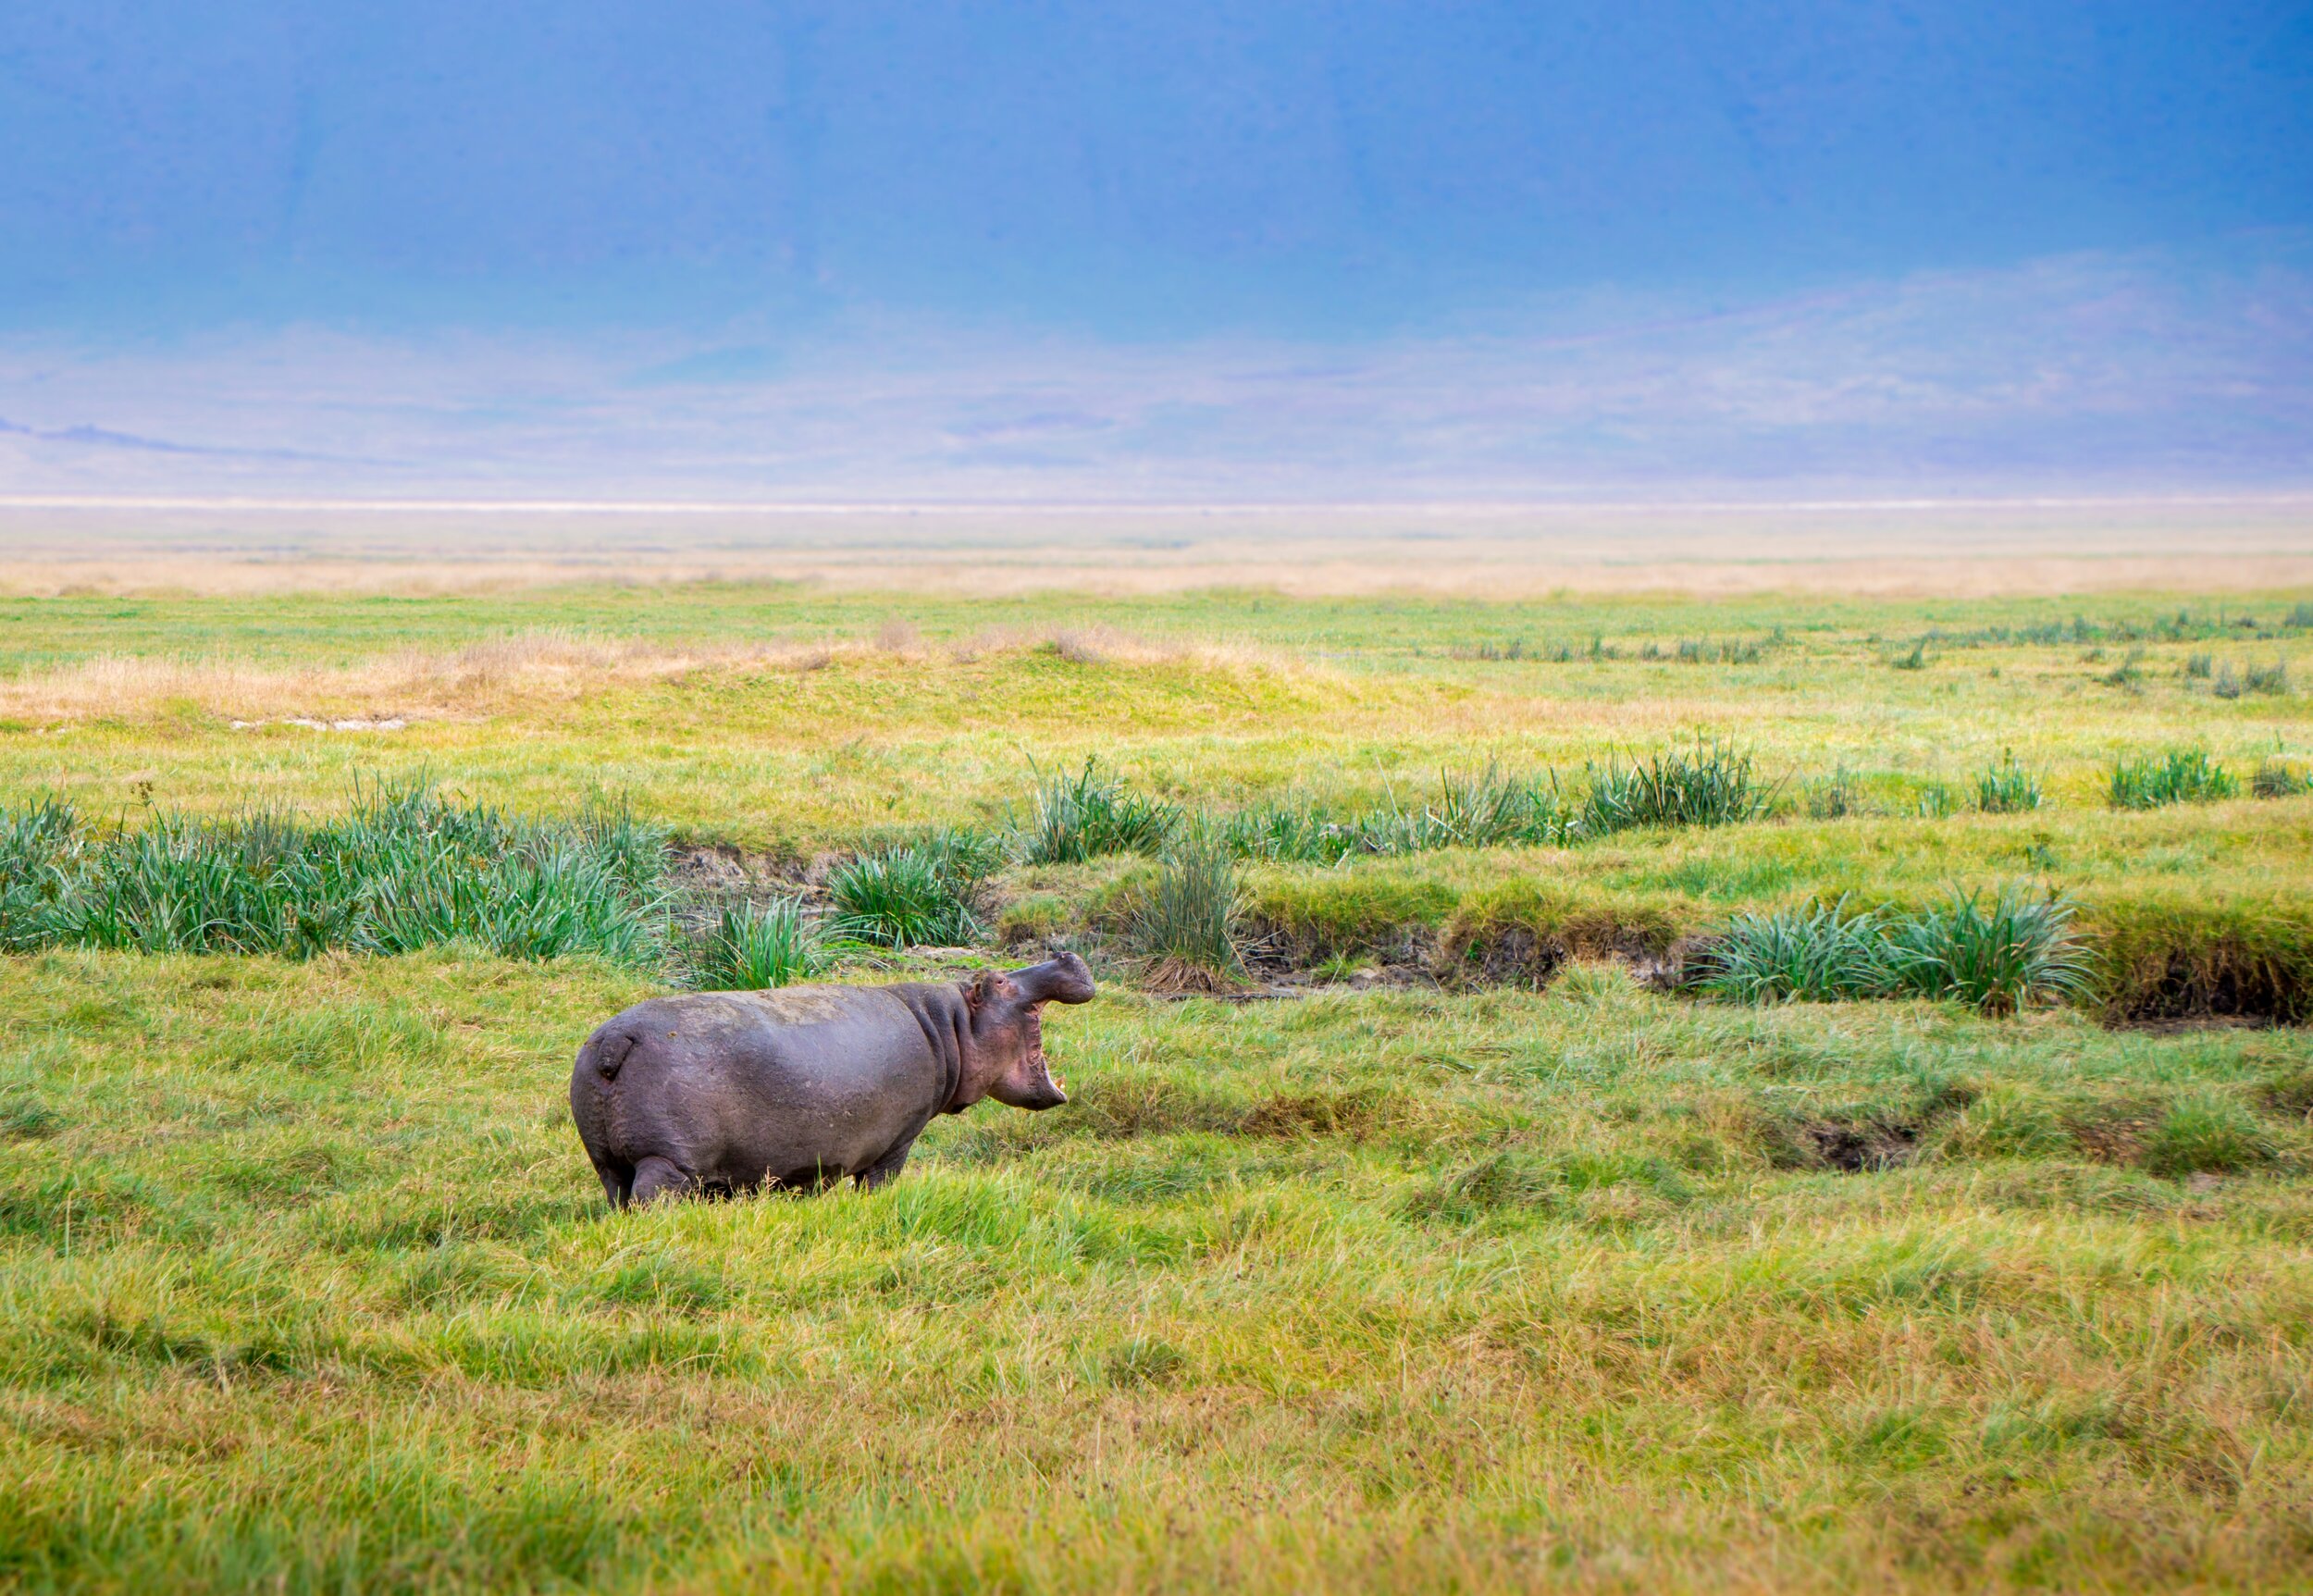 Hippo in Ngorongoro Crater